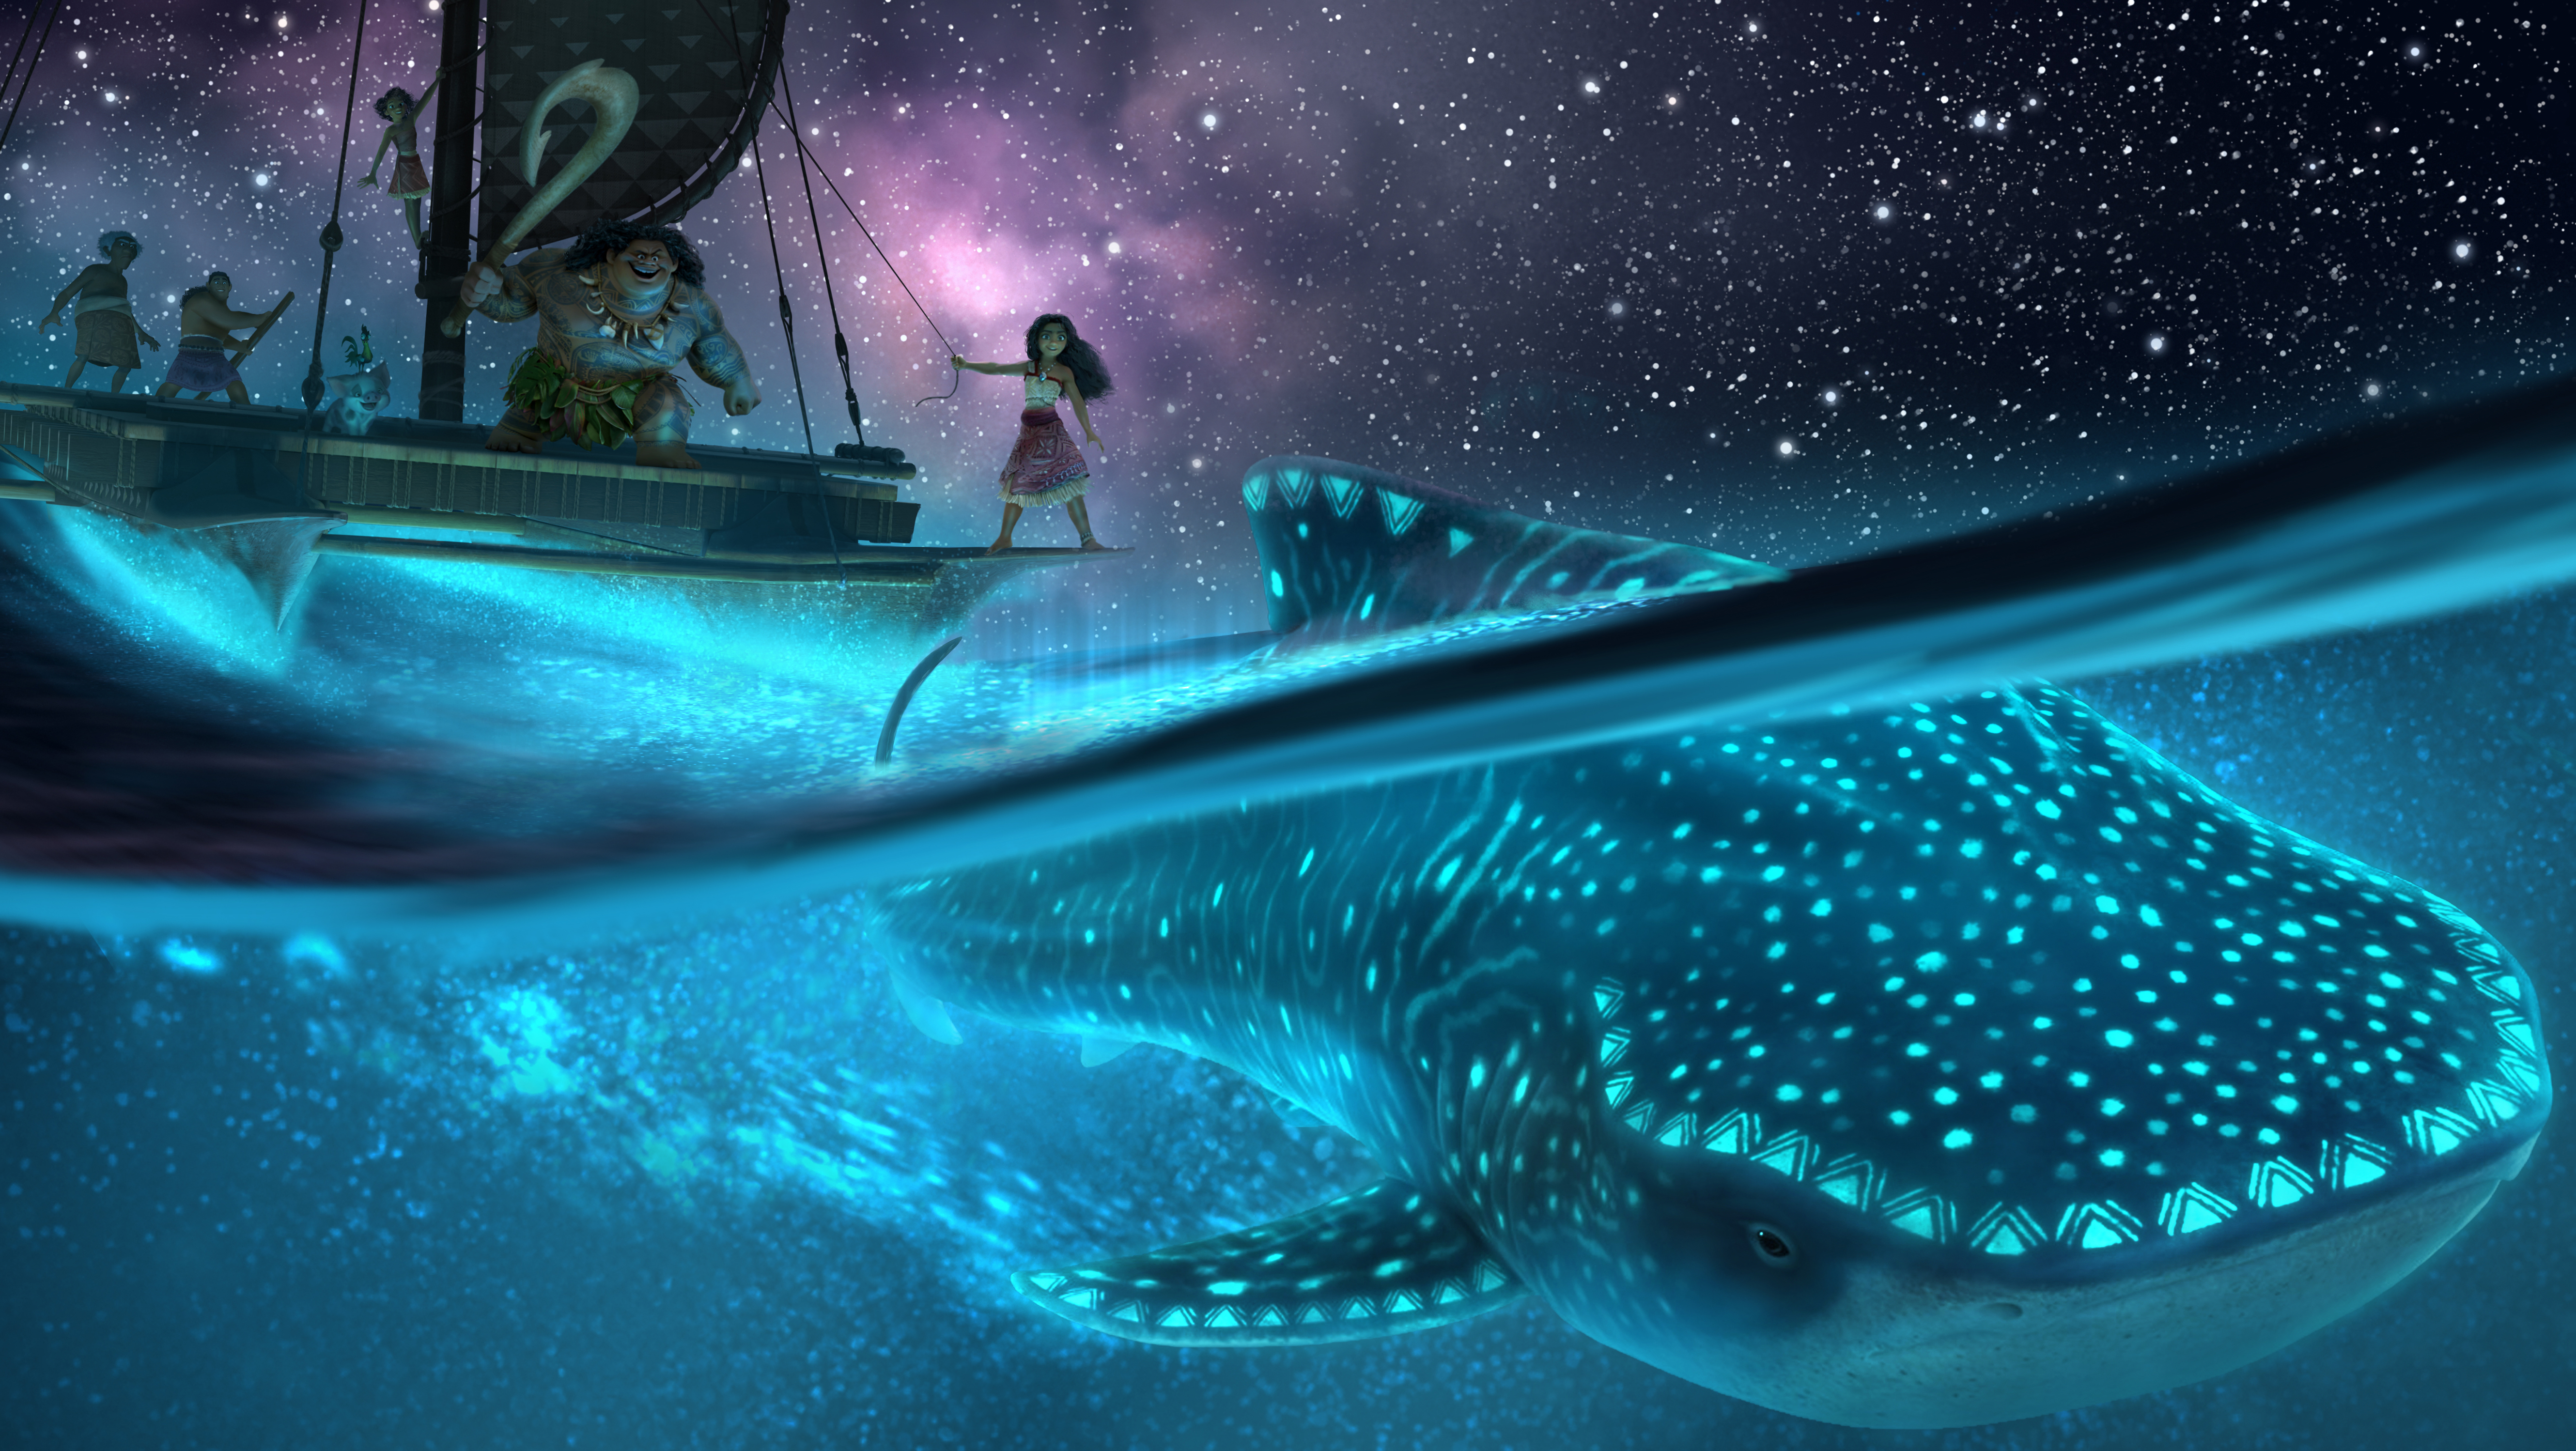 Imagem de Moana 2; a personagem está navegando pelos mares com um animal marinho brilhante nas águas azuis durante a noite; o céu estrelado em tons de roxo e rosa faz contraste com as águas iluminadas em azul